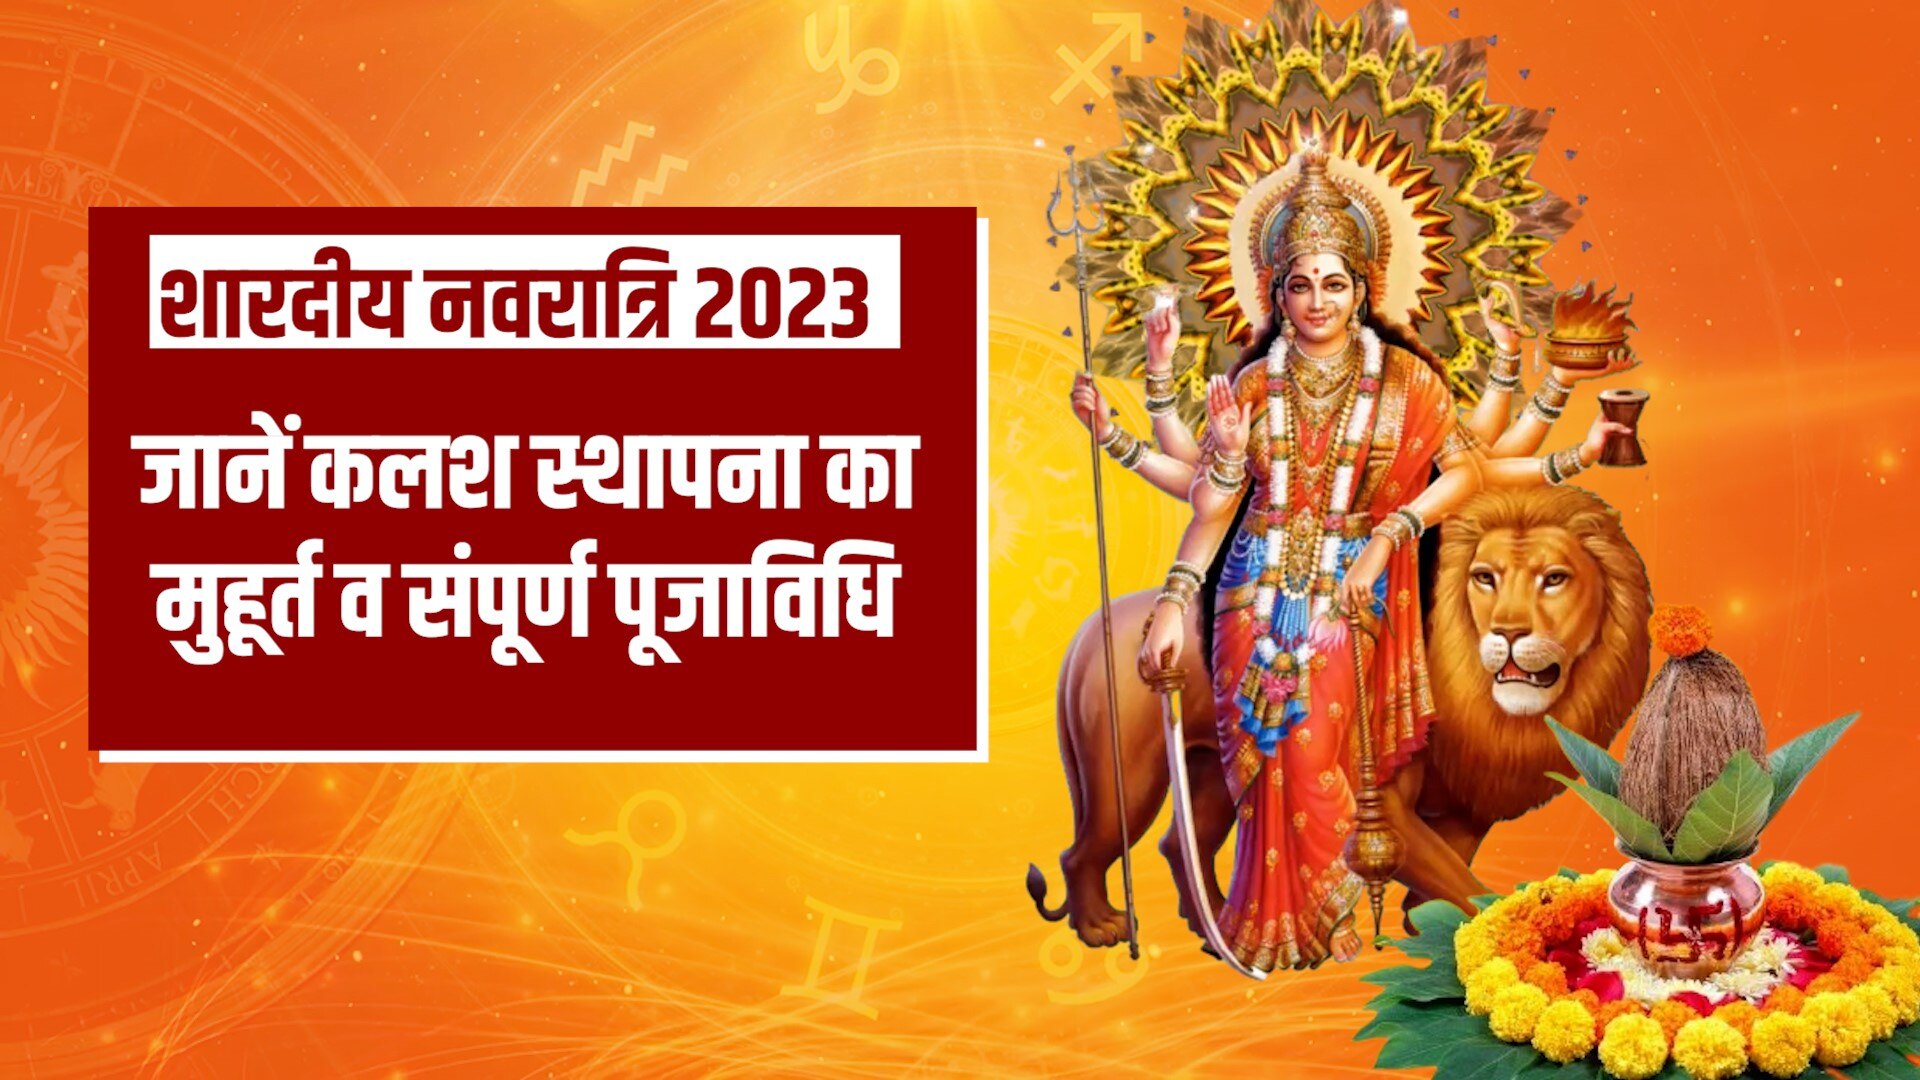 Shardiya Navratri 2023 Date Kalash Sthapana Shubh Muhurat Puja Vidhi And Upay For Good Business 0236